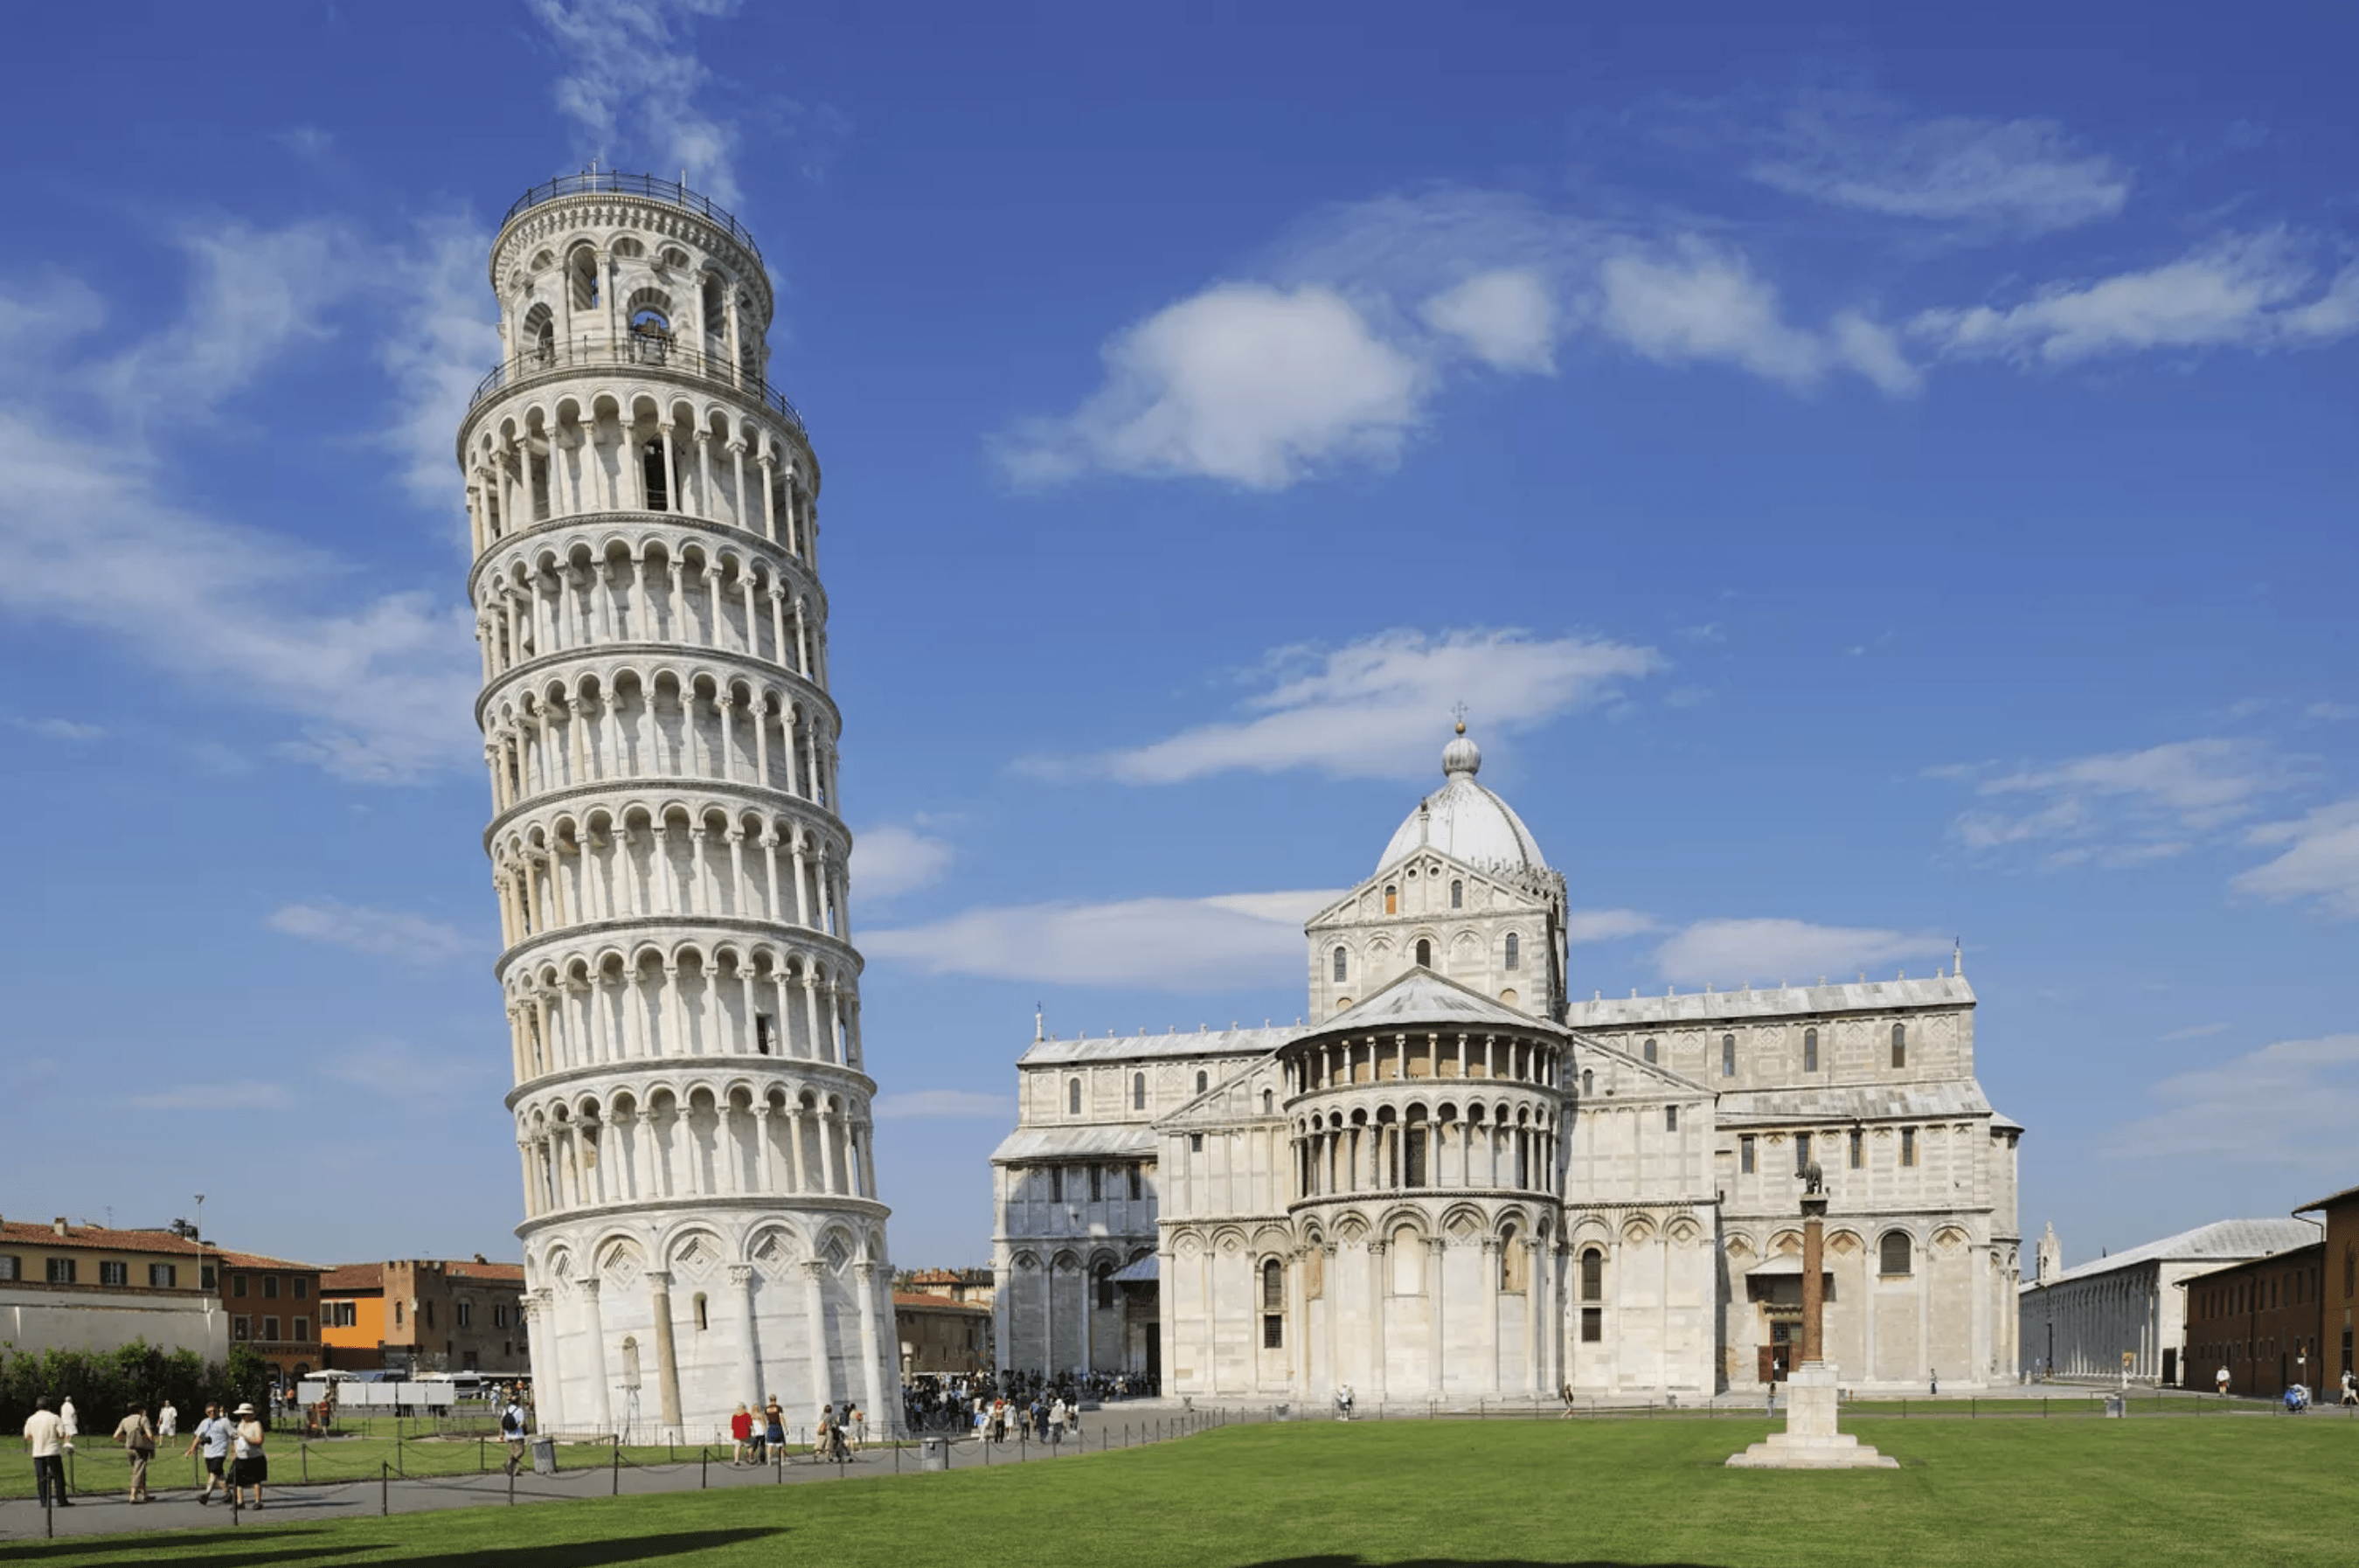 Turnul inclinat din Pisa planuridevacanta.ro